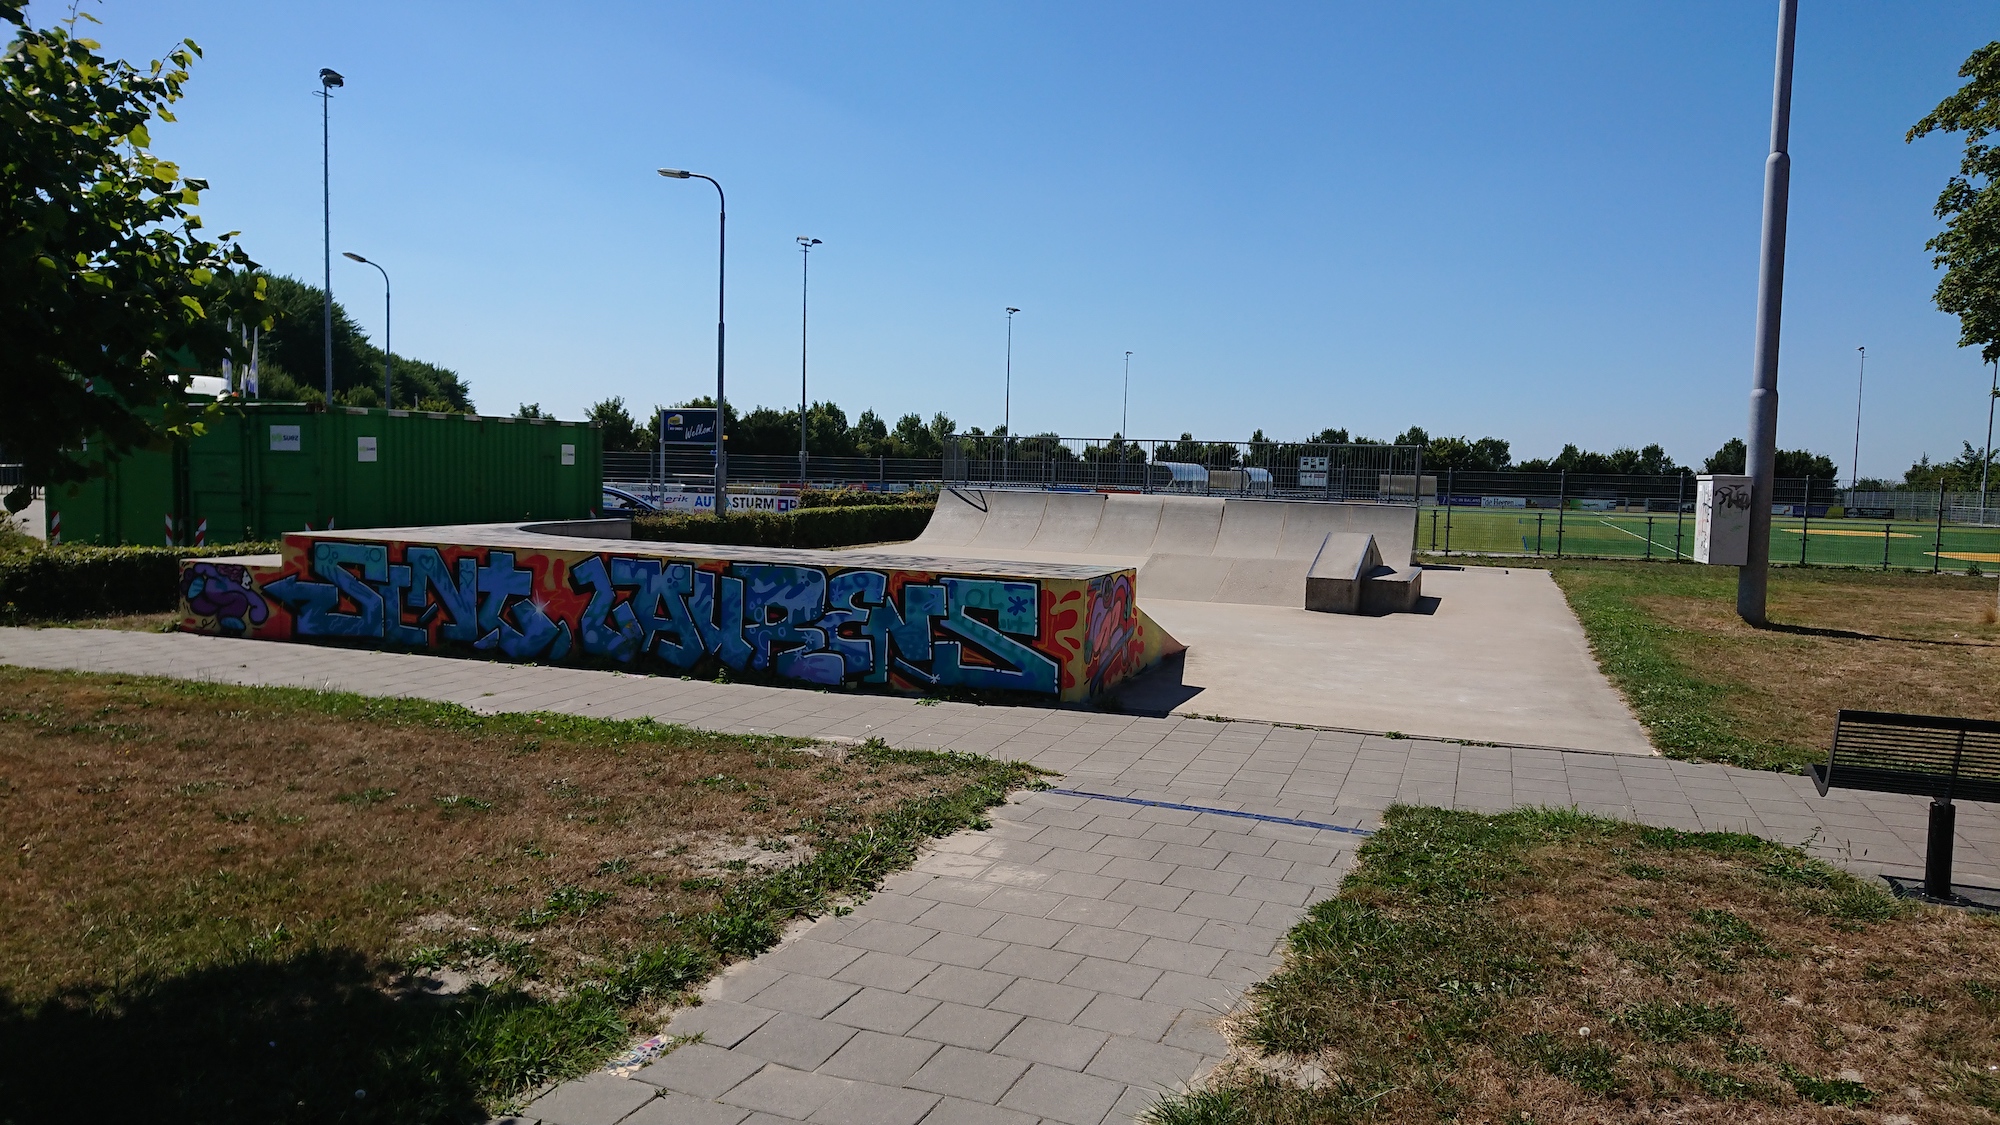 Sint Laurens Skatepark